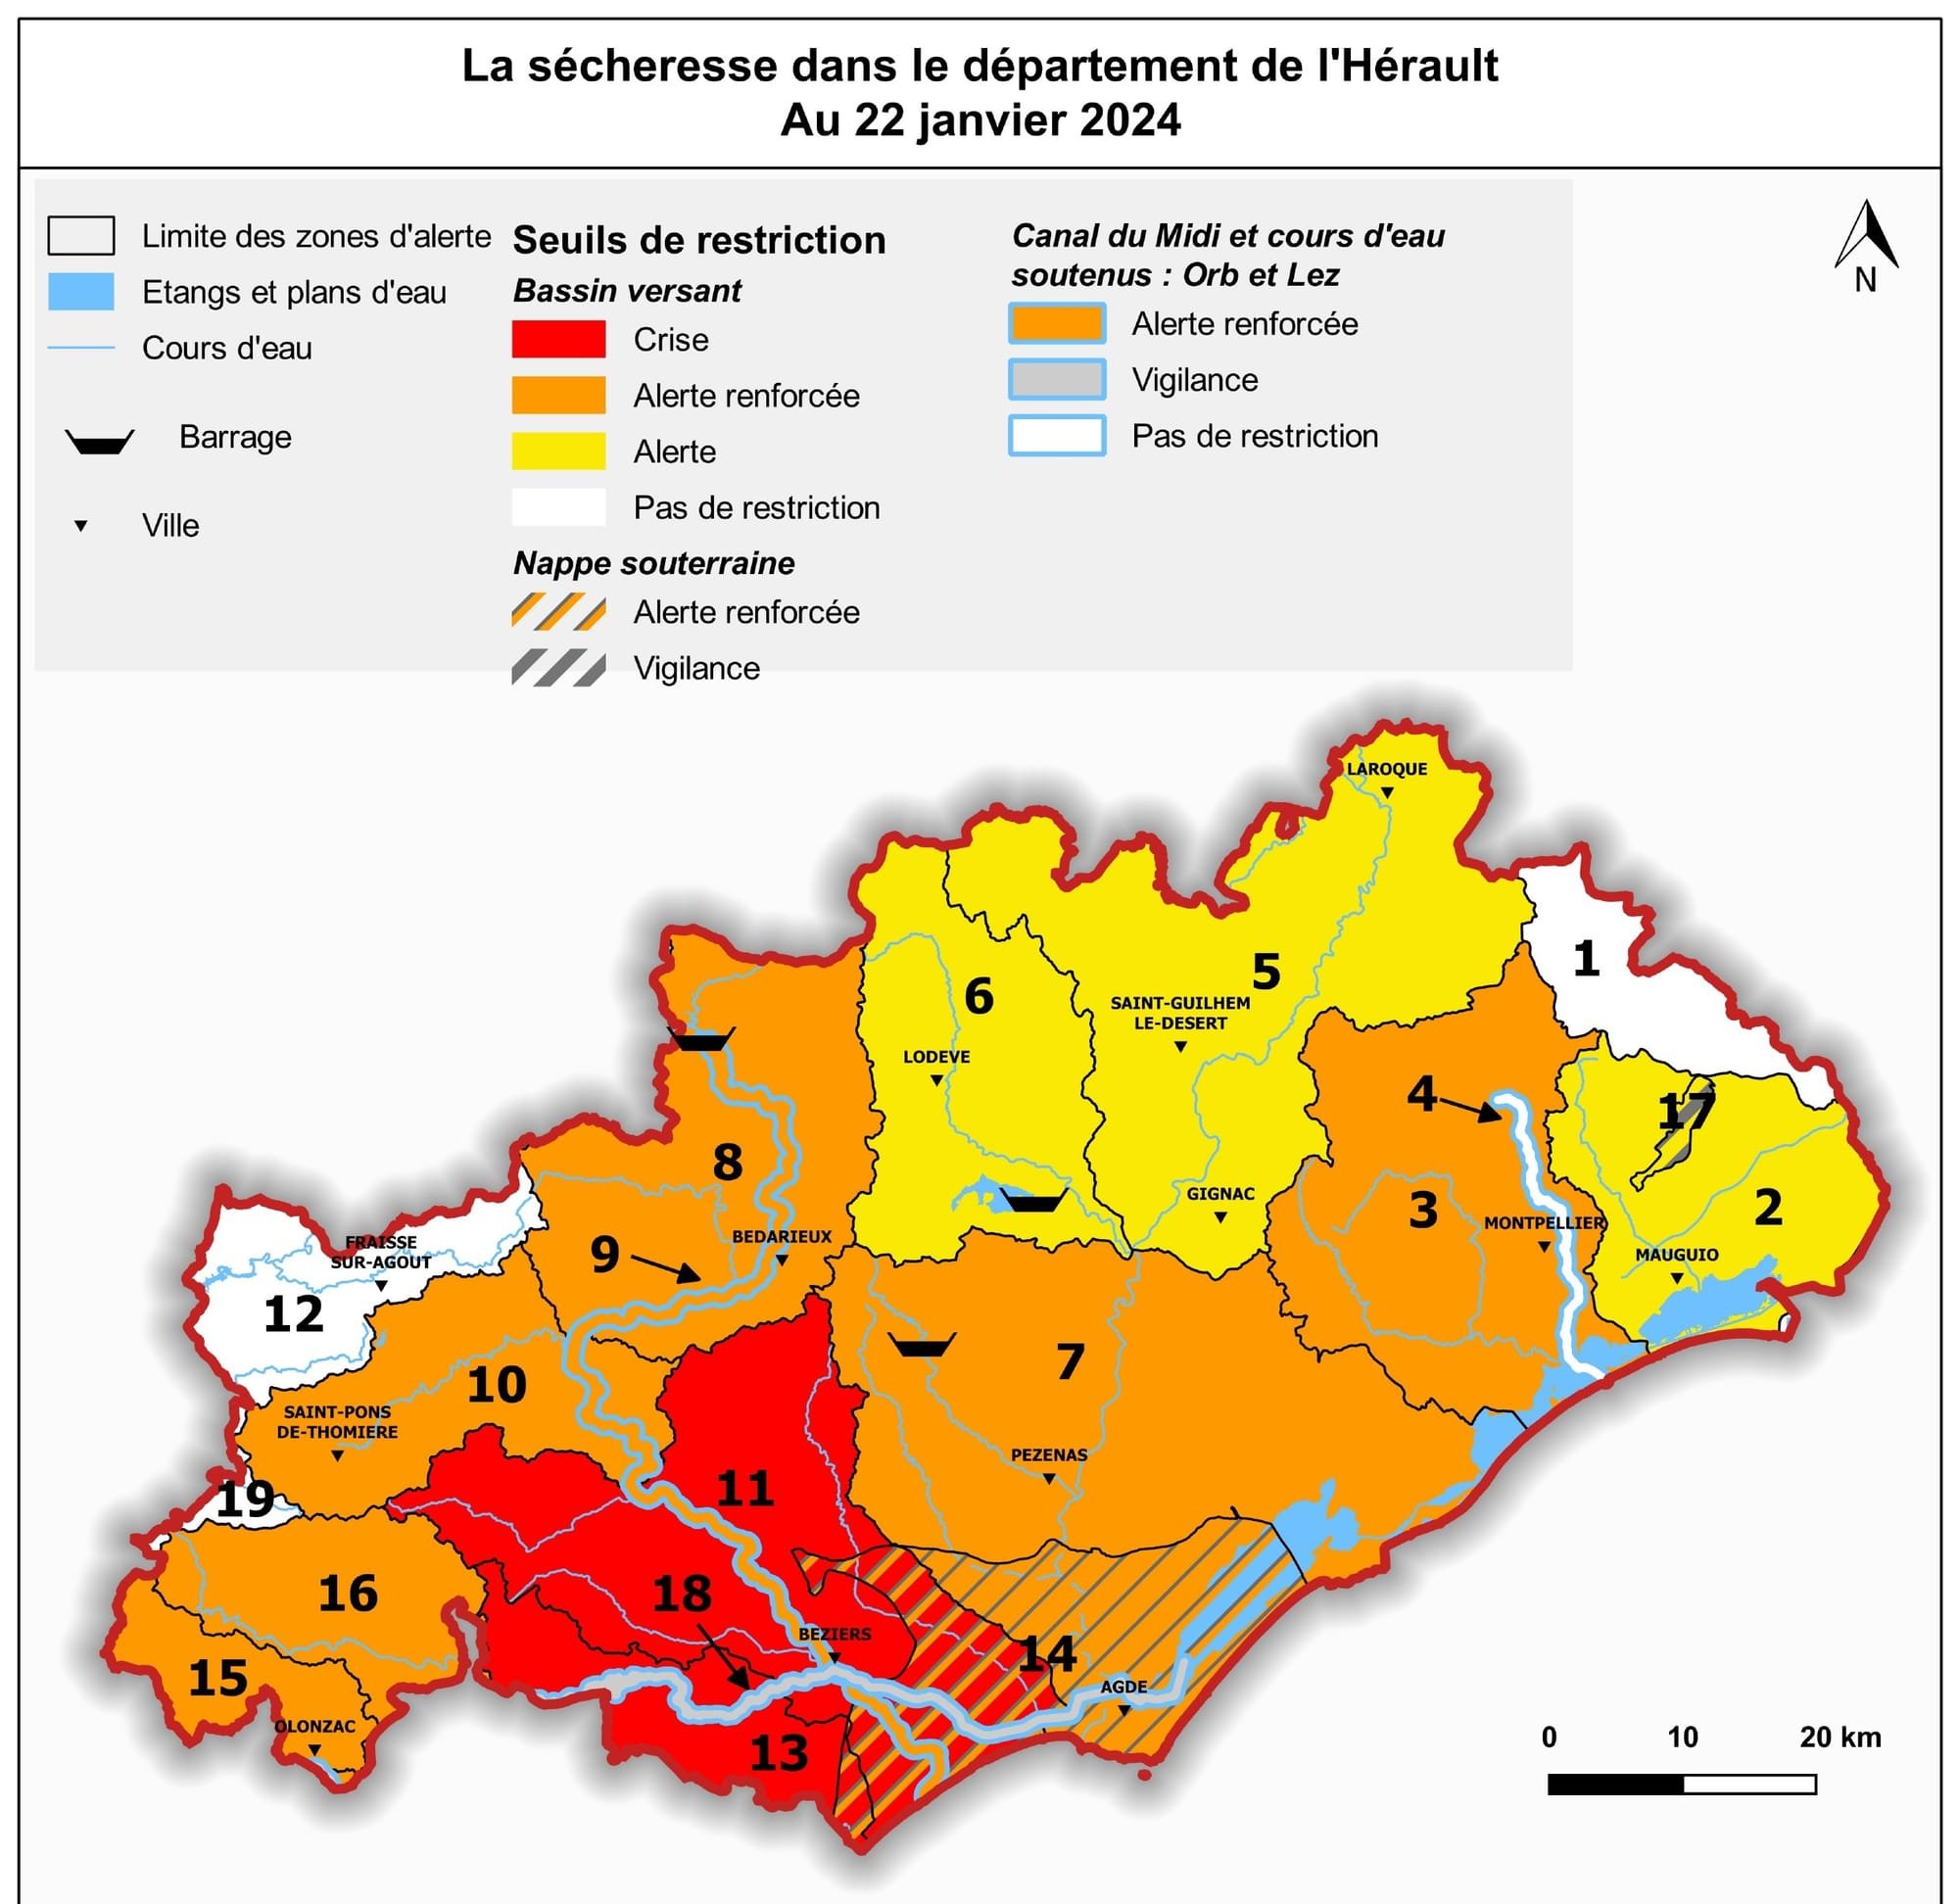 Prolongation de l’état de crise “sécheresse” au 1er février 2024